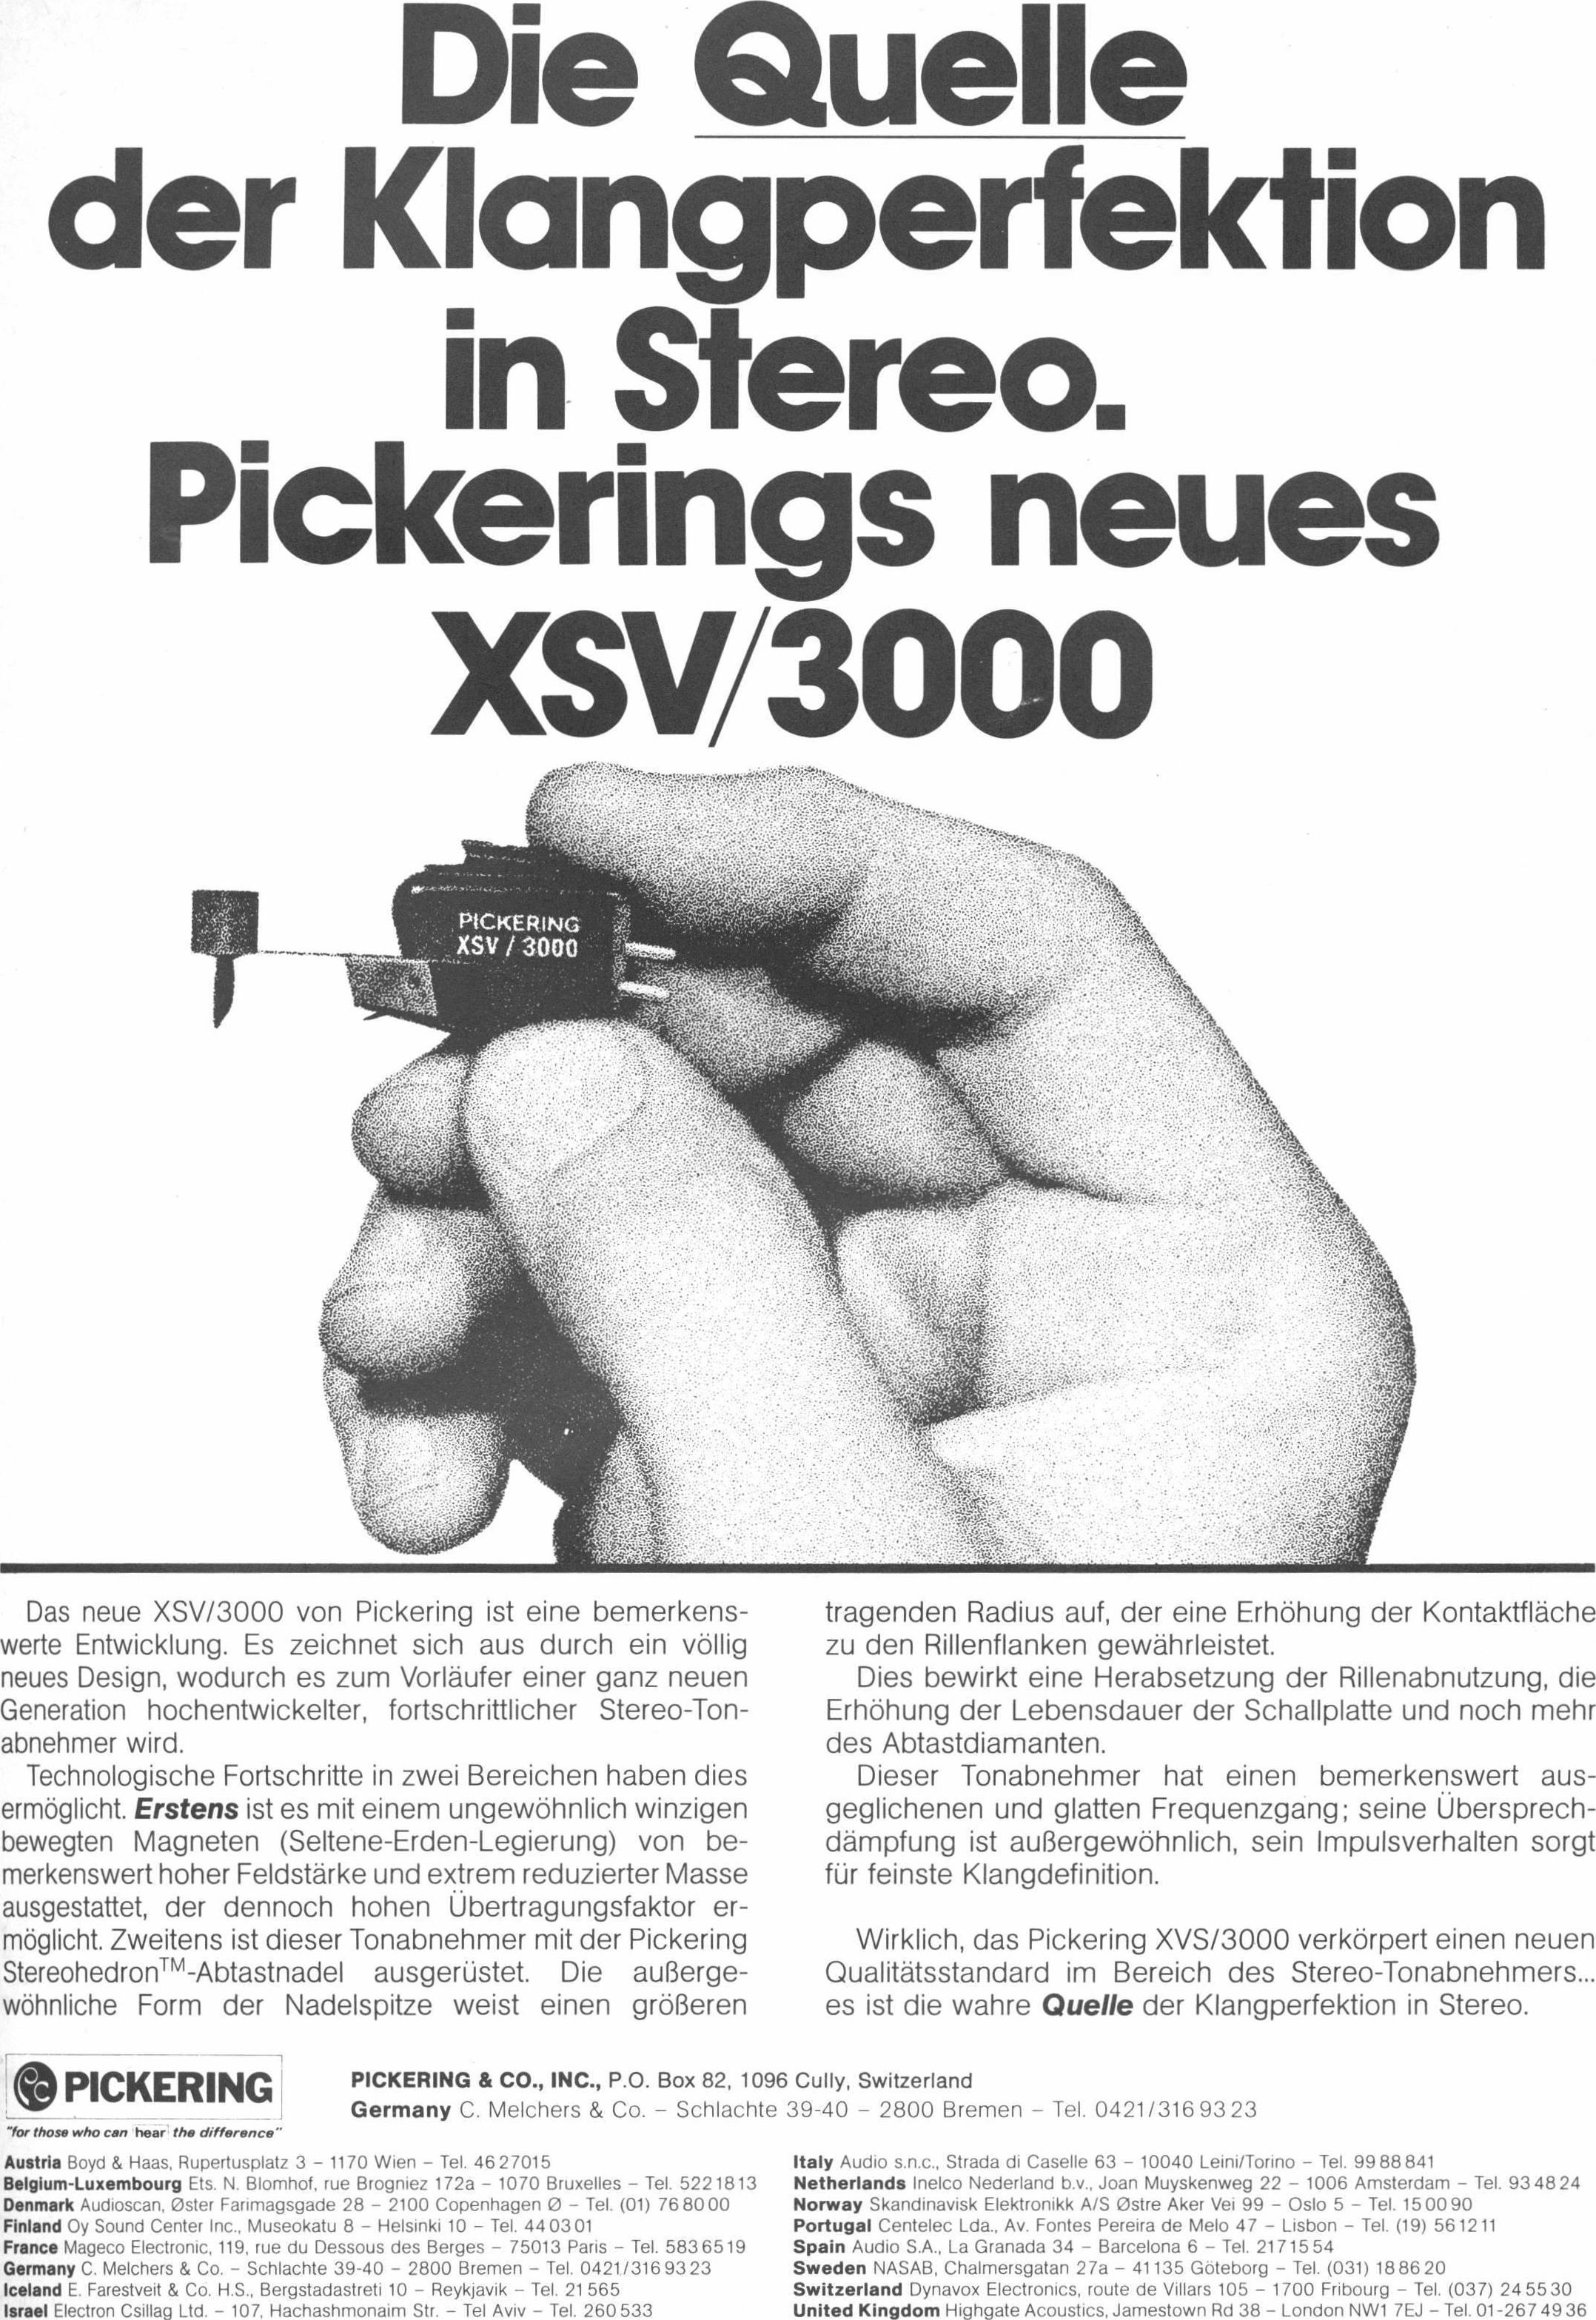 Pickering 1977 079.jpg